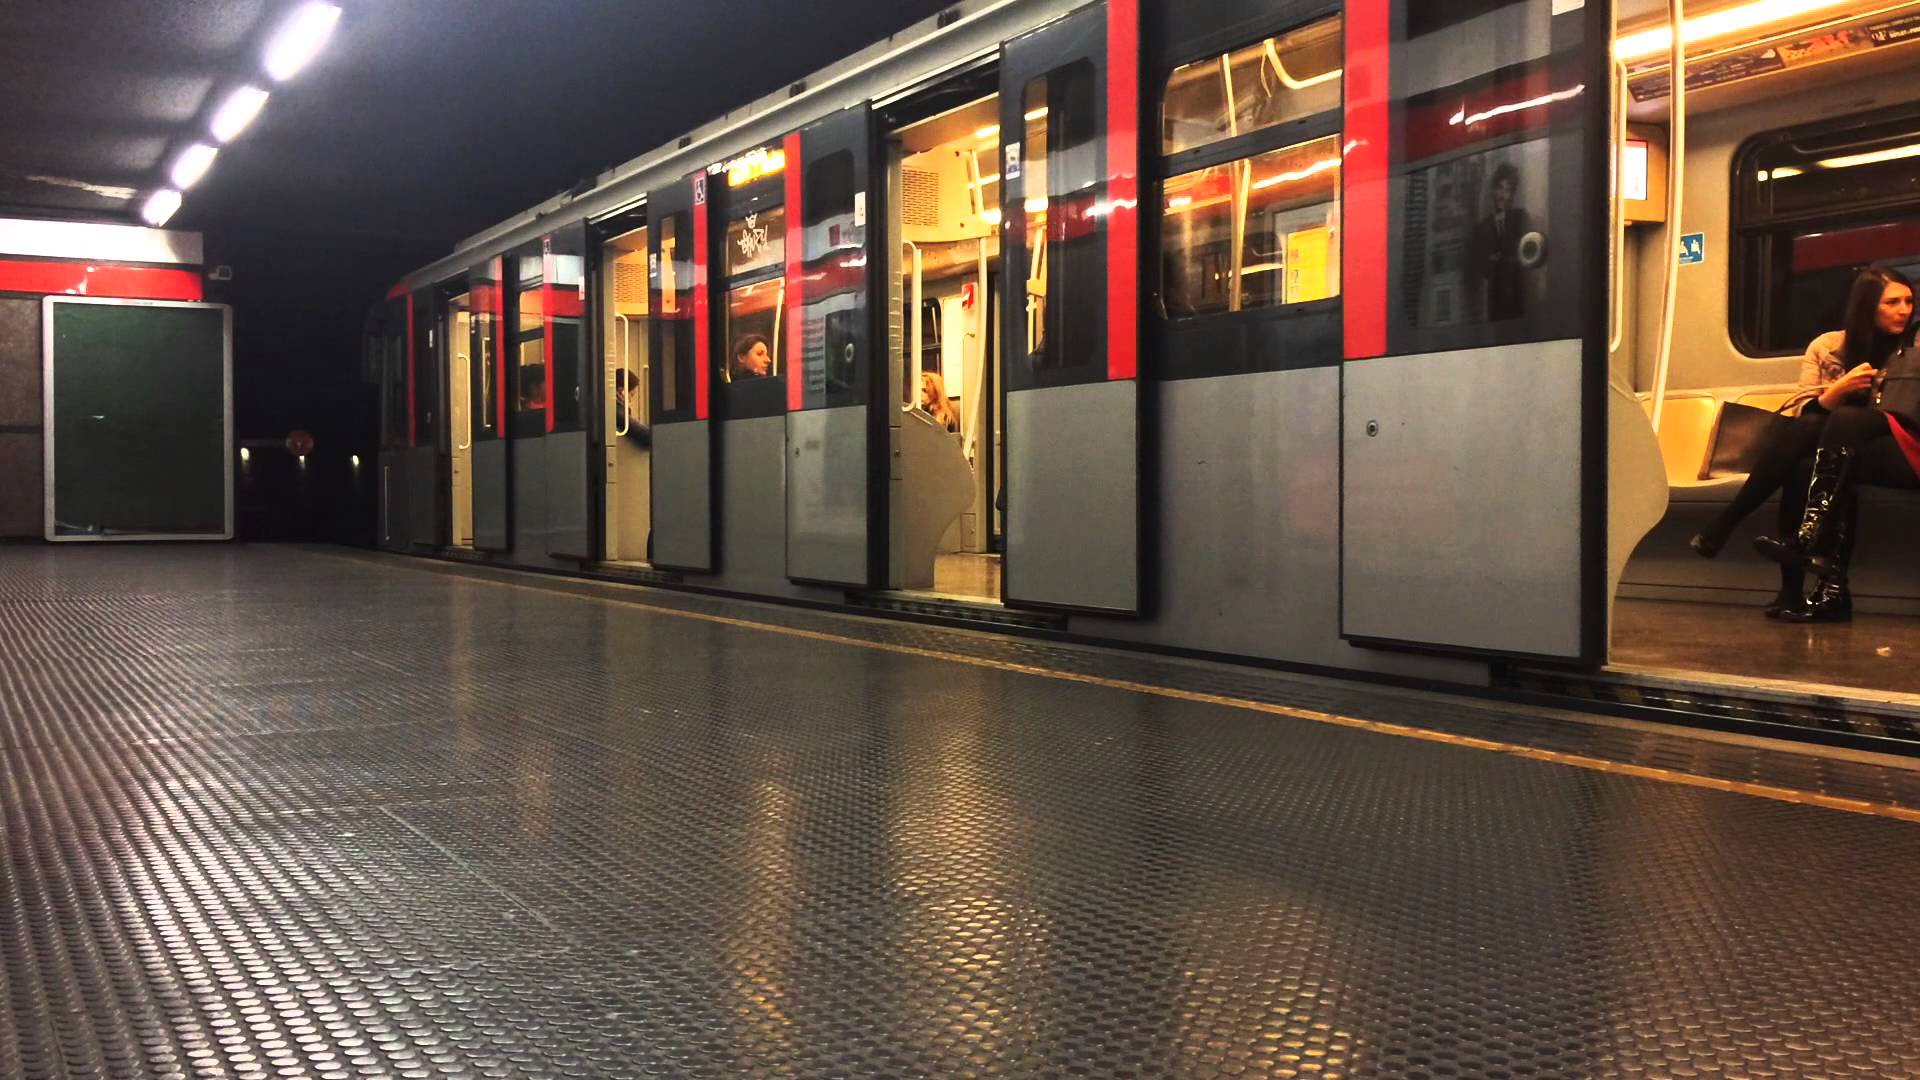 Milano, entra in metro senza pagare il biglietto: egiziano prende a pugni il controllore